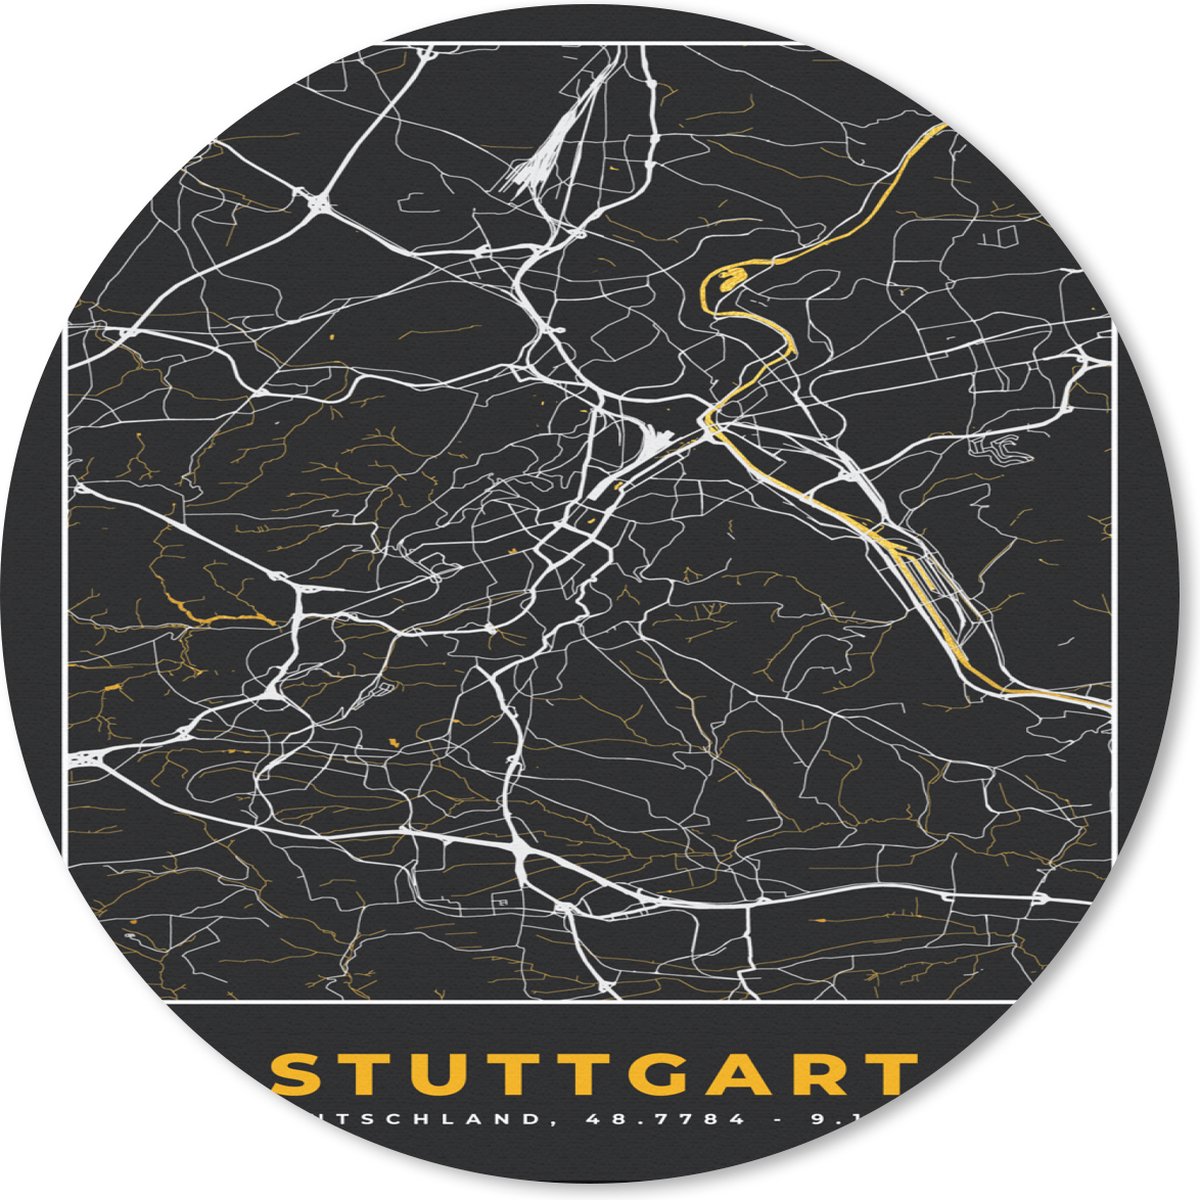 Muismat - Mousepad - Rond - Stuttgart - Goud - Plattegrond - Kaart - Stadskaart - Duitsland - 20x20 cm - Ronde muismat